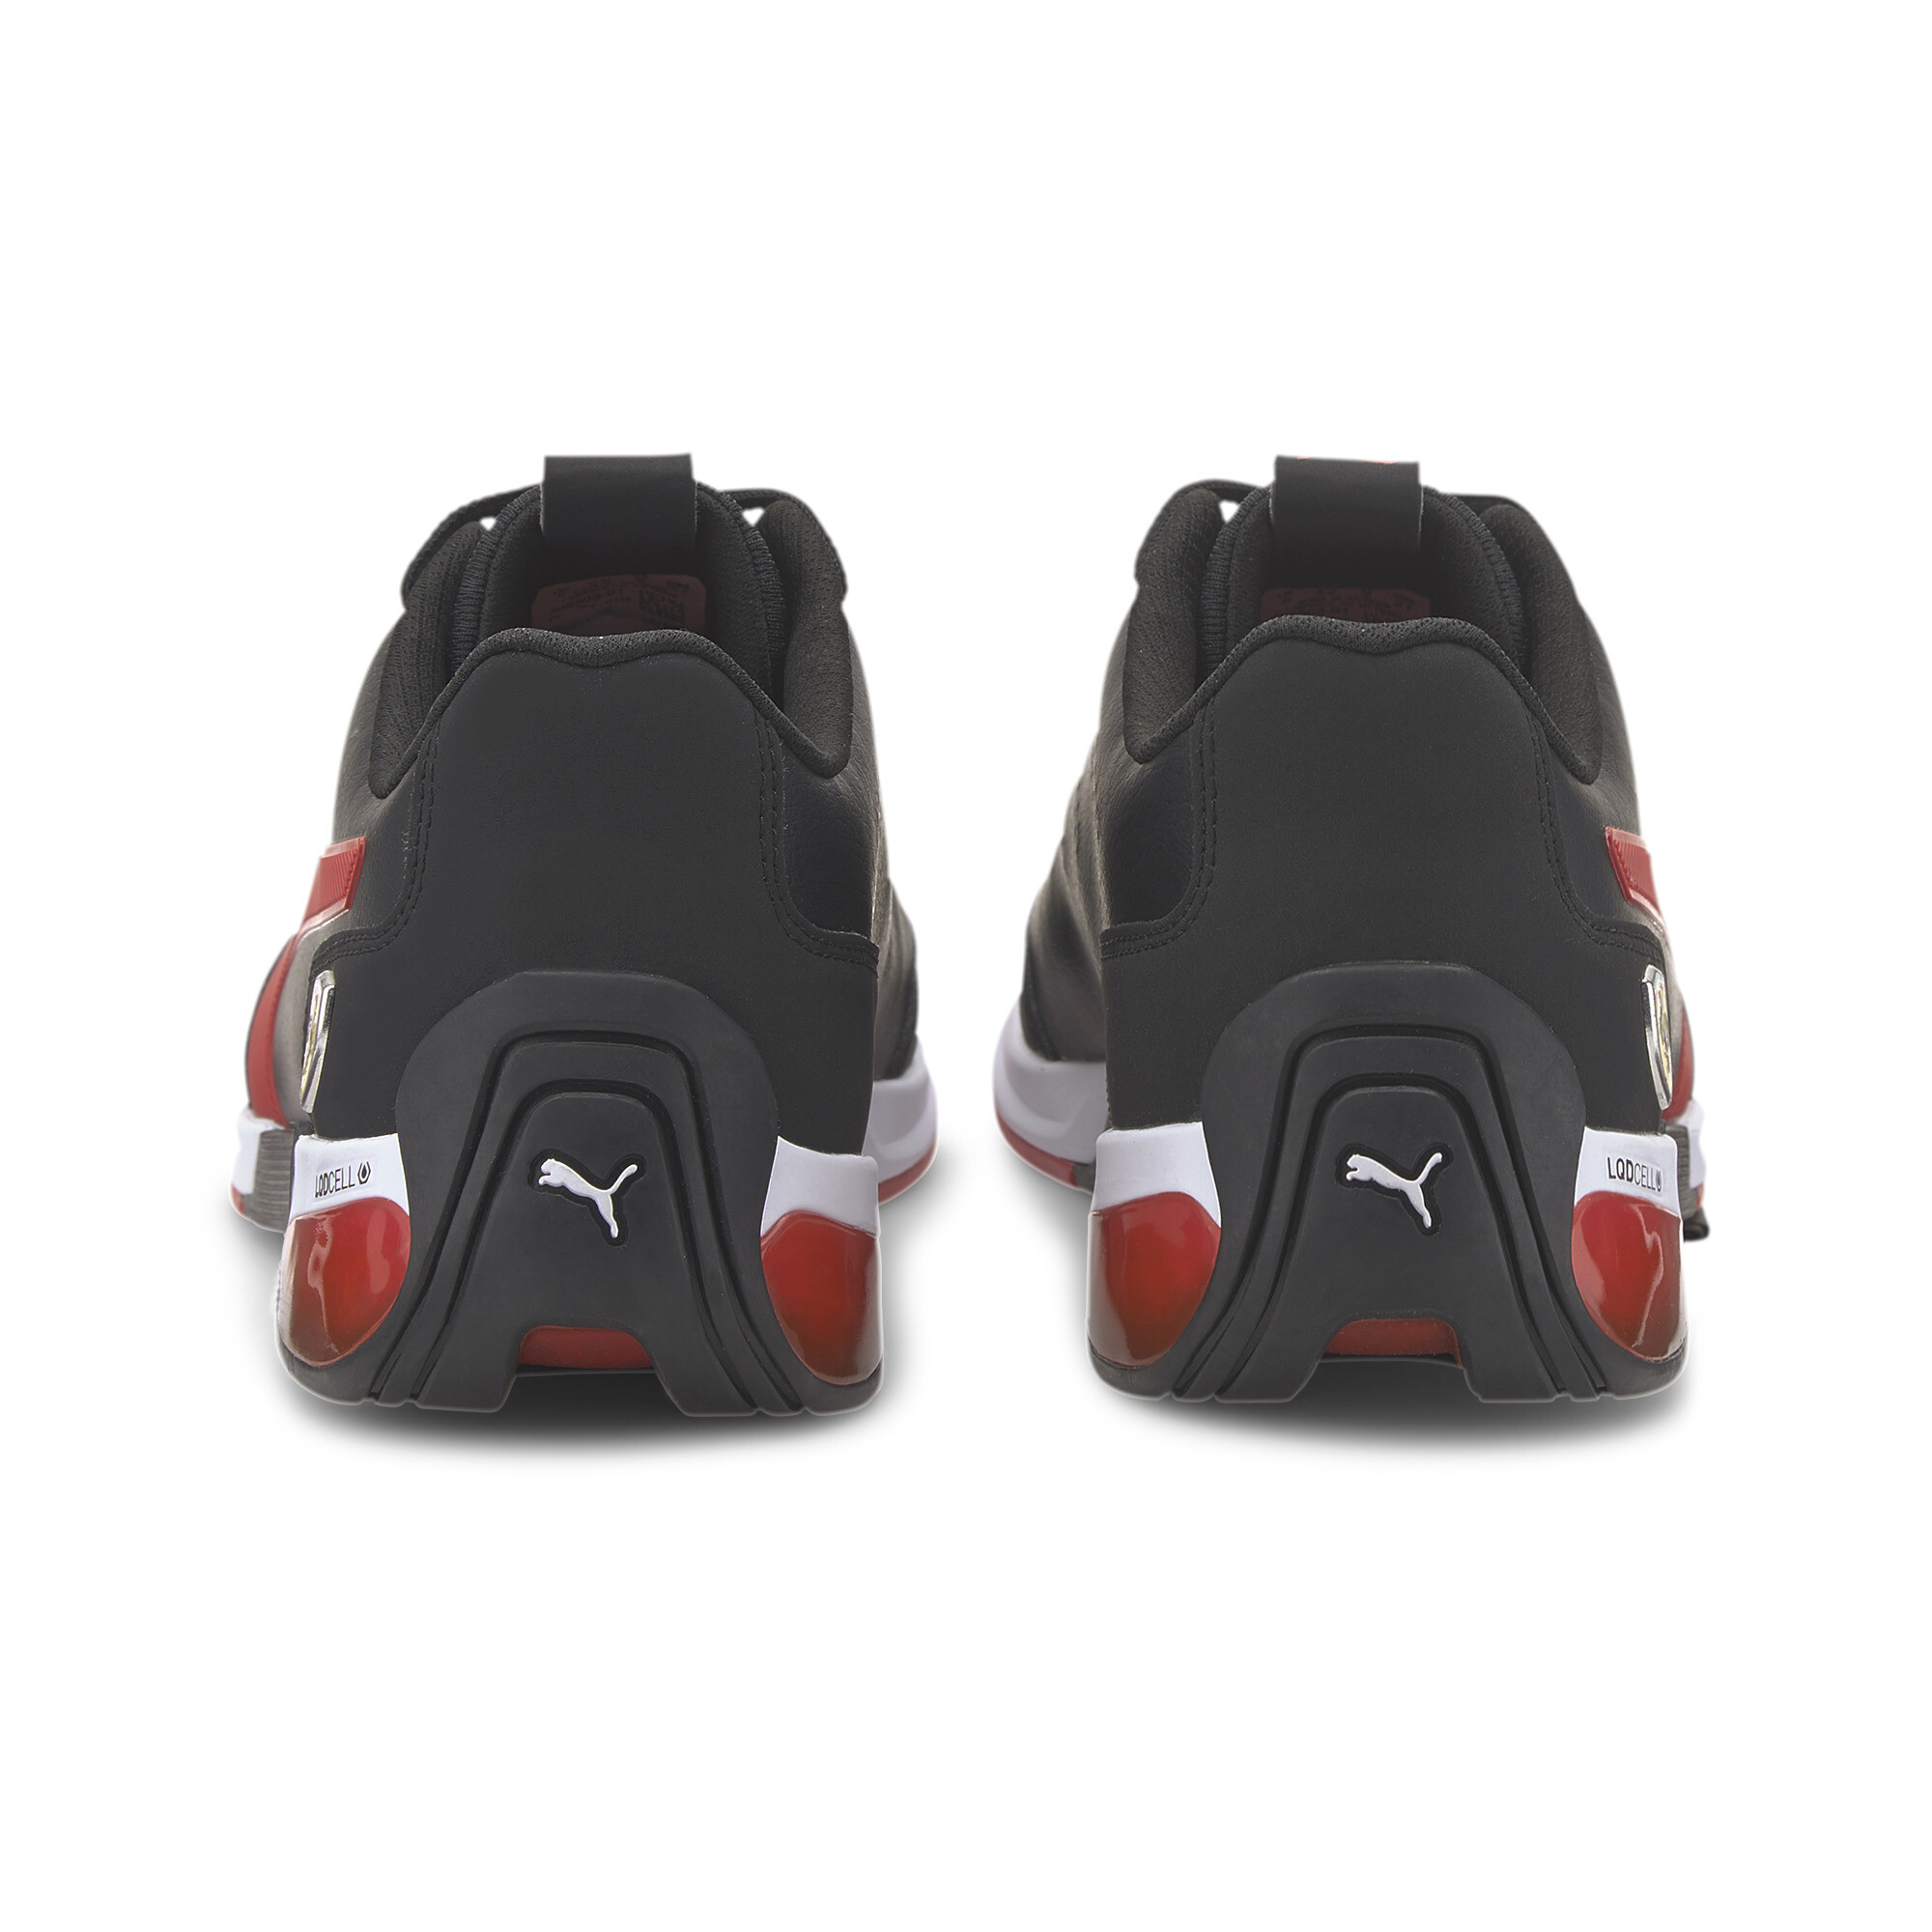 PUMA Men's Scuderia Ferrari Kart Cat X Motorsport Shoes | eBay